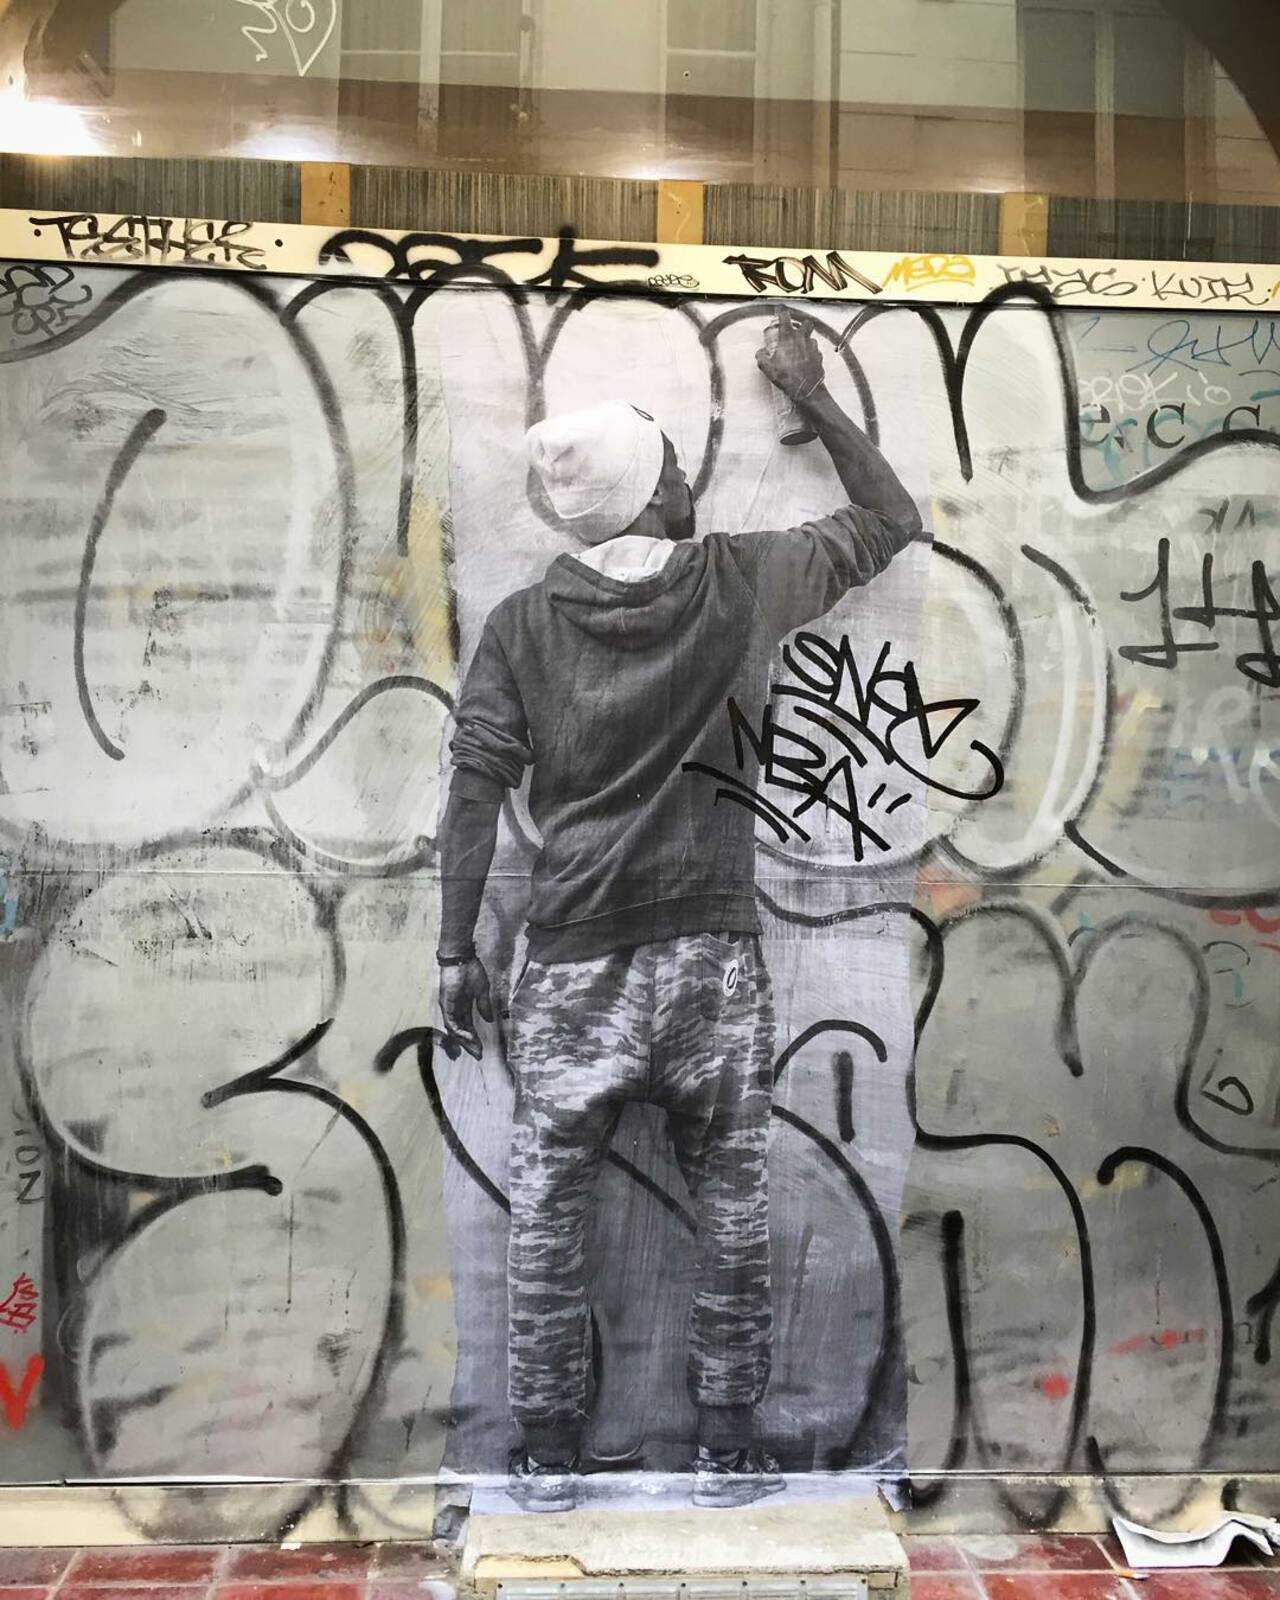 http://ift.tt/1KiqpQt #Paris #graffiti photo by martincoady http://ift.tt/1hLQ7CM #StreetArt http://t.co/nTmDDkaJki